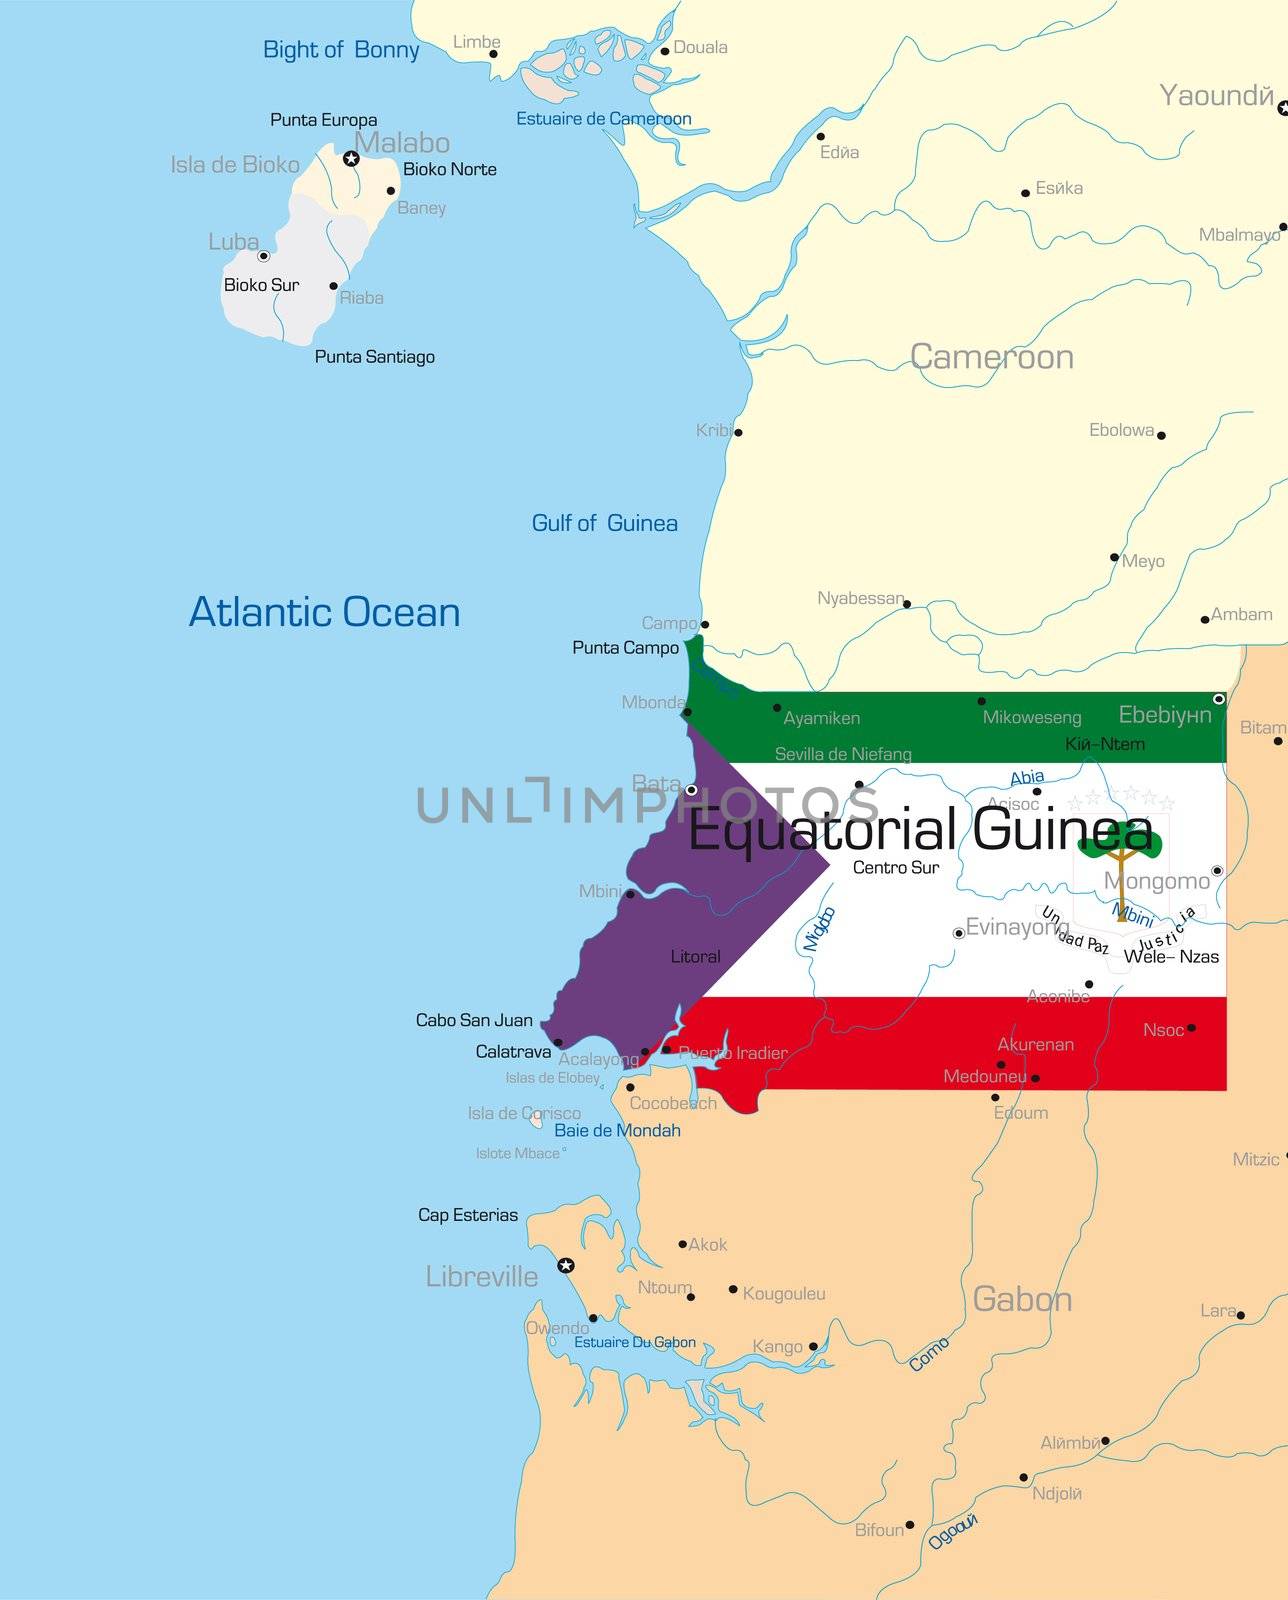 Equatorial Guinea  by rusak